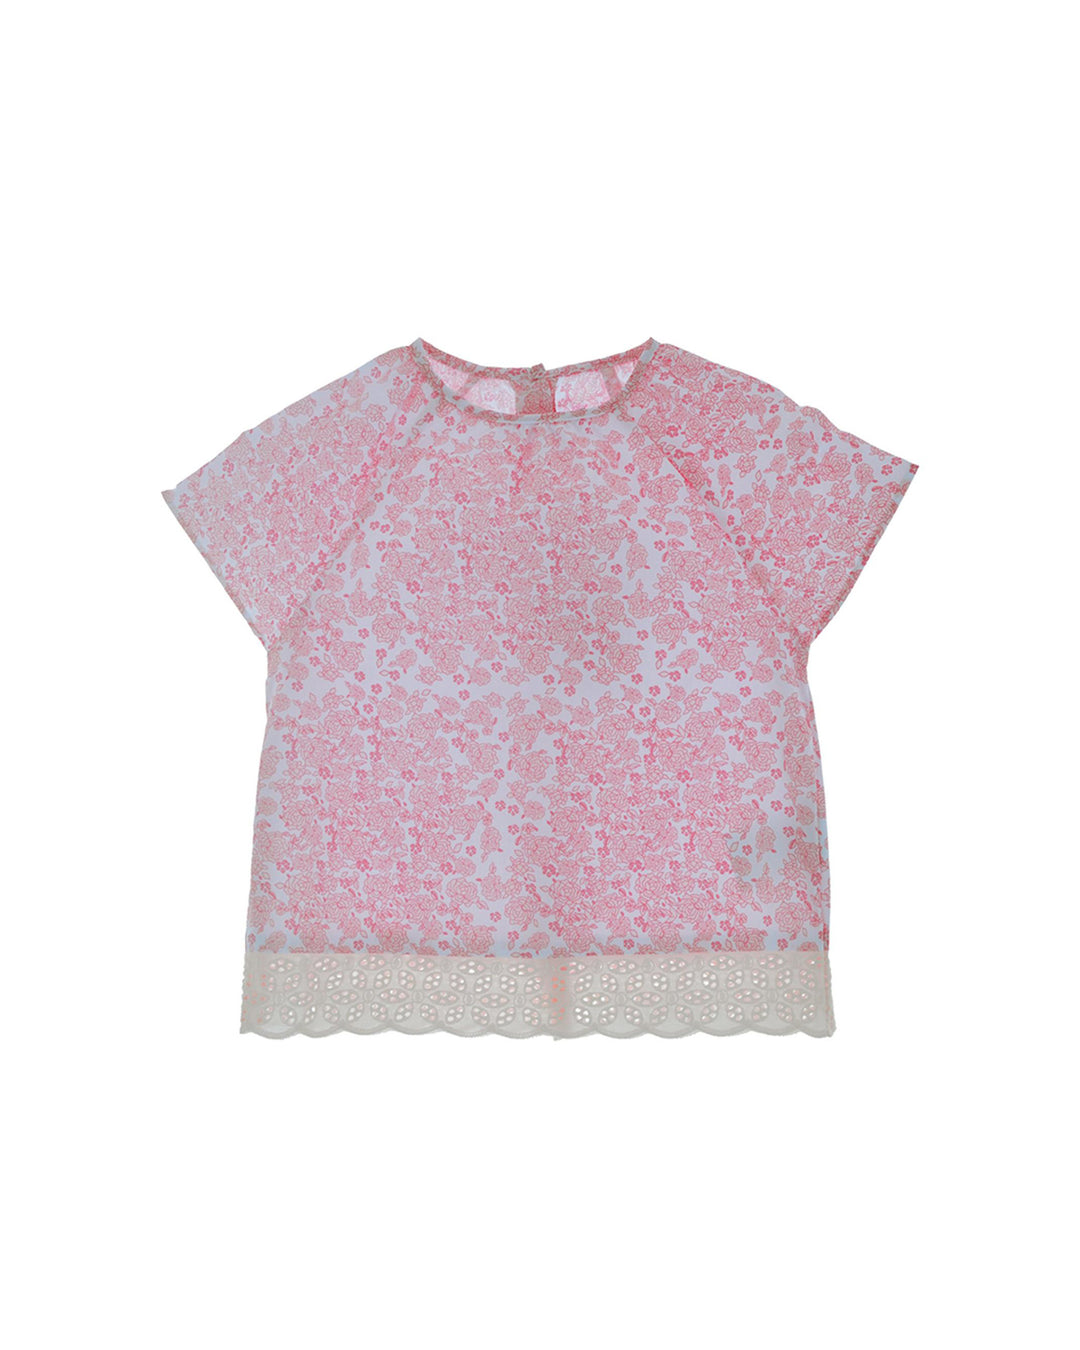 Blusa con estampado de flores rosadas y detalle de tira bordada en el ruedo